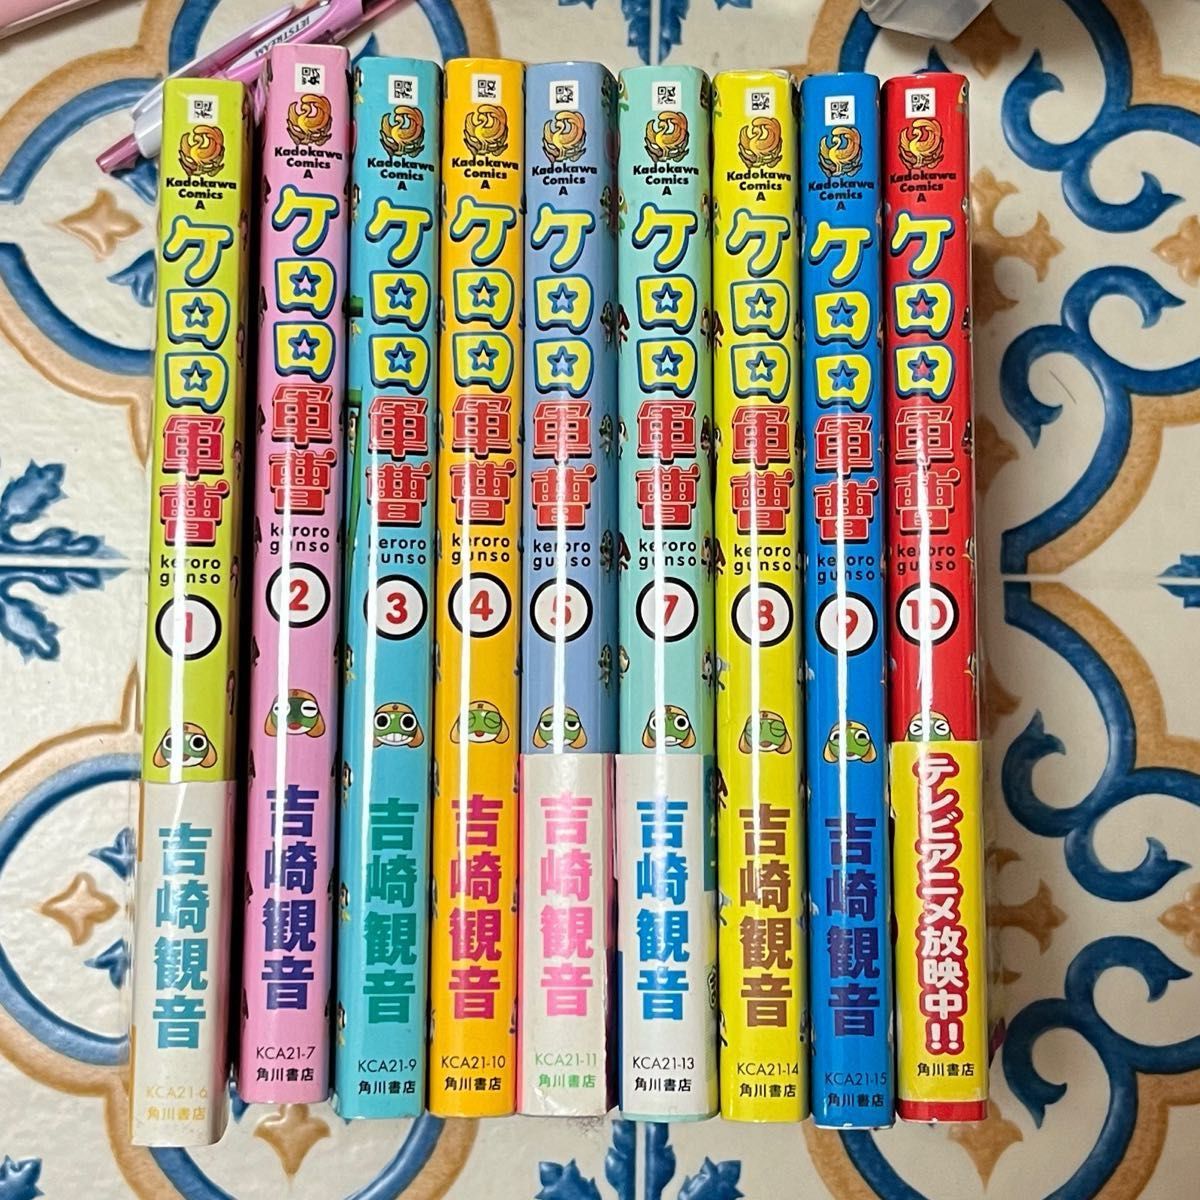 ケロロ軍曹 グッズ 色々と コミックス 1-11巻 セット 角川書店 吉崎観音 